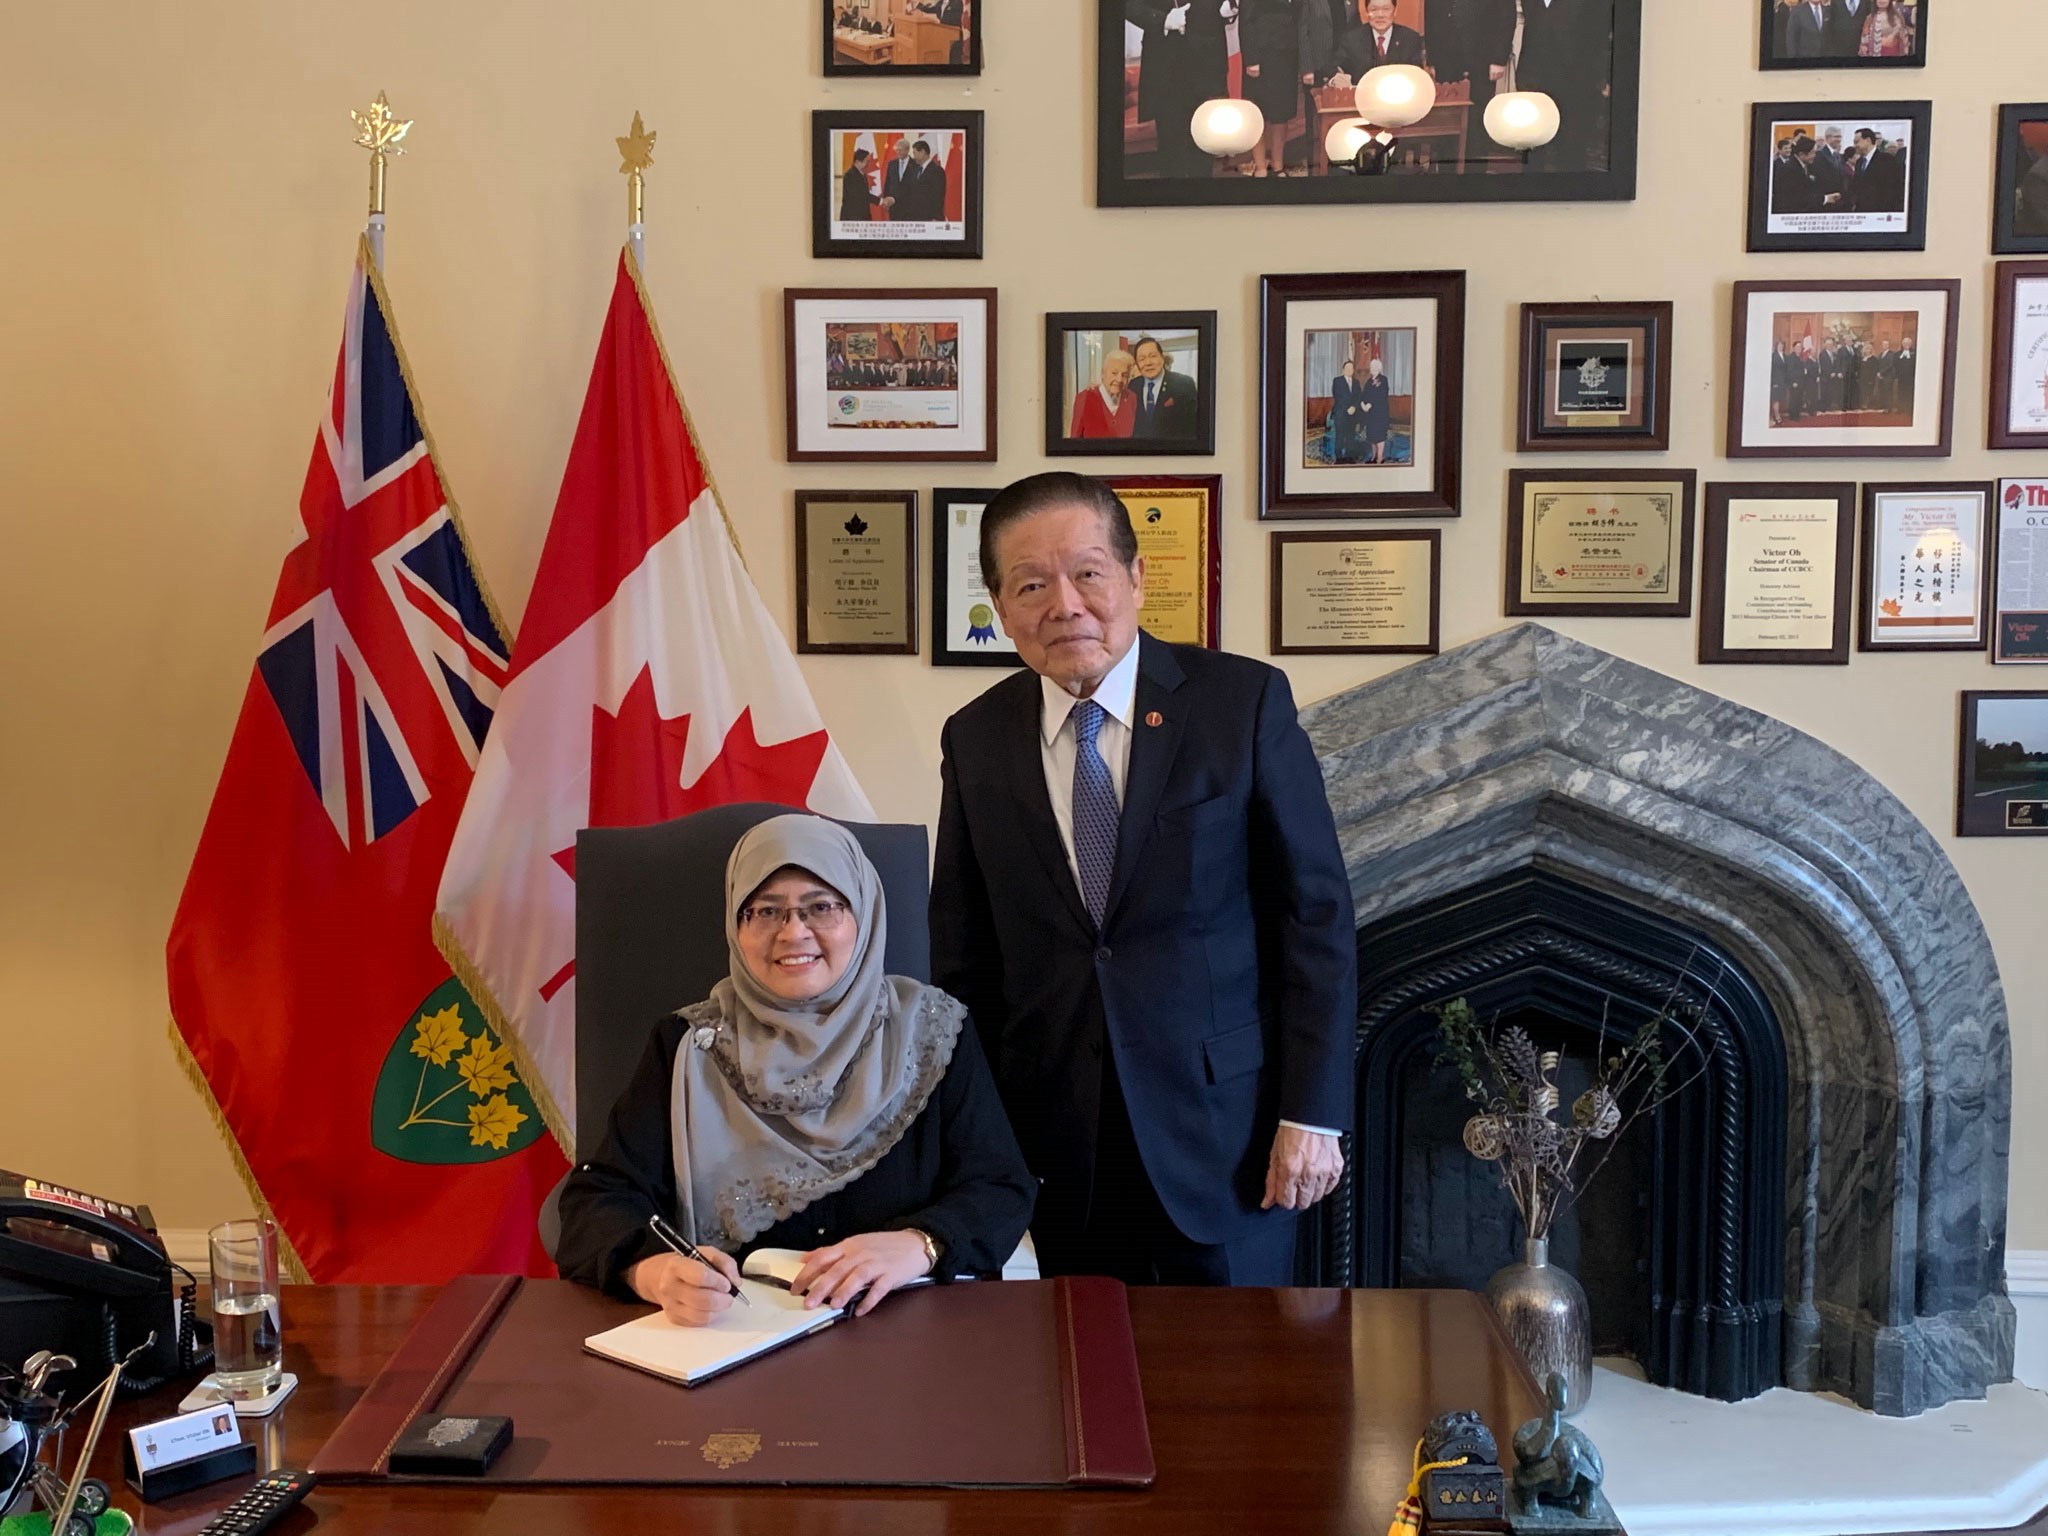 Le mercredi 23 mars 2022 – Le sénateur Victor Oh rencontre Son Excellence madame Anizan Siti Hajjar Adnin, haute commissaire de la Malaisie au Canada. Ils ont discuté de diverses questions concernant les deux pays, entre autres des atouts du Canada qui en font une destination attrayante pour les étudiants malaisiens désireux d’étudier à l’étranger.